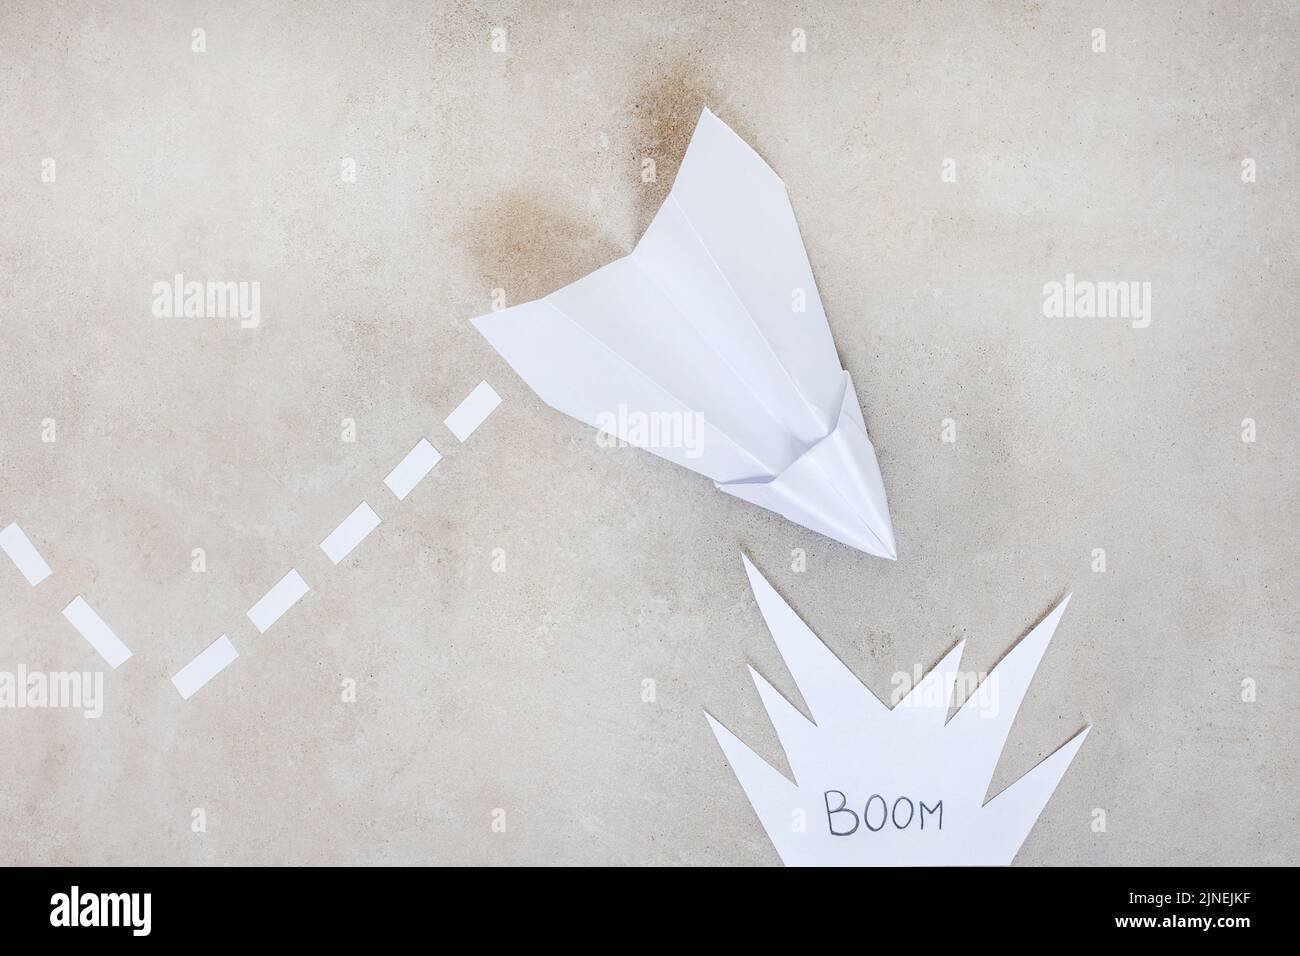 Aeroplano di carta come metafora, in direzione di un incidente o di un'esplosione, su grigio con spazio di copia Foto Stock